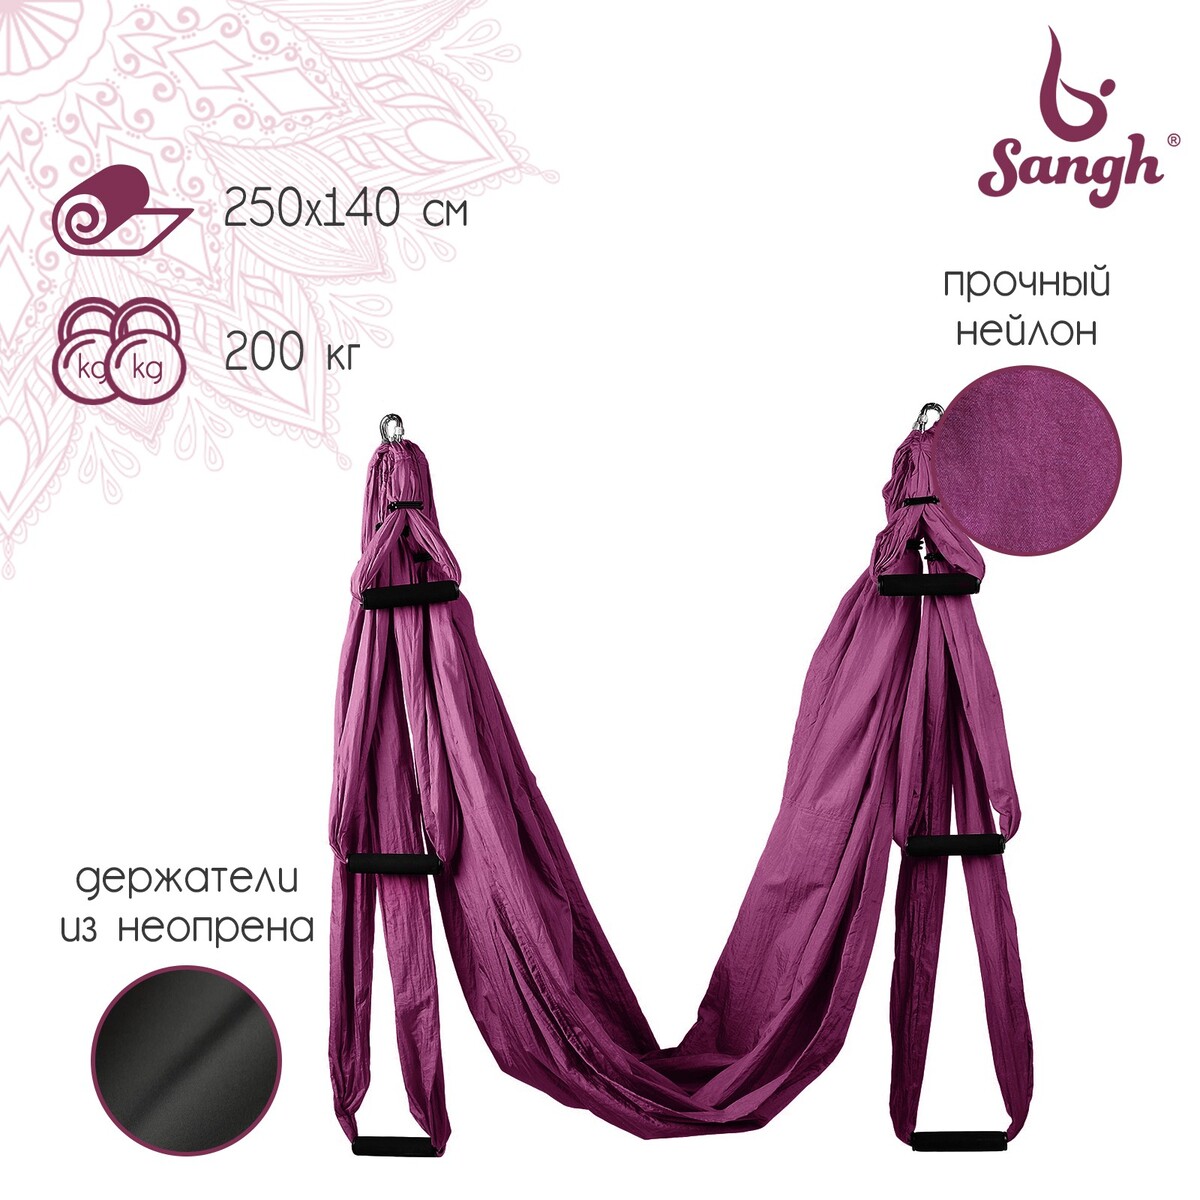 Гамак для йоги sangh, 250×140 см, цвет фиолетовый гамак для йоги sangh 250×140 см фиолетовый